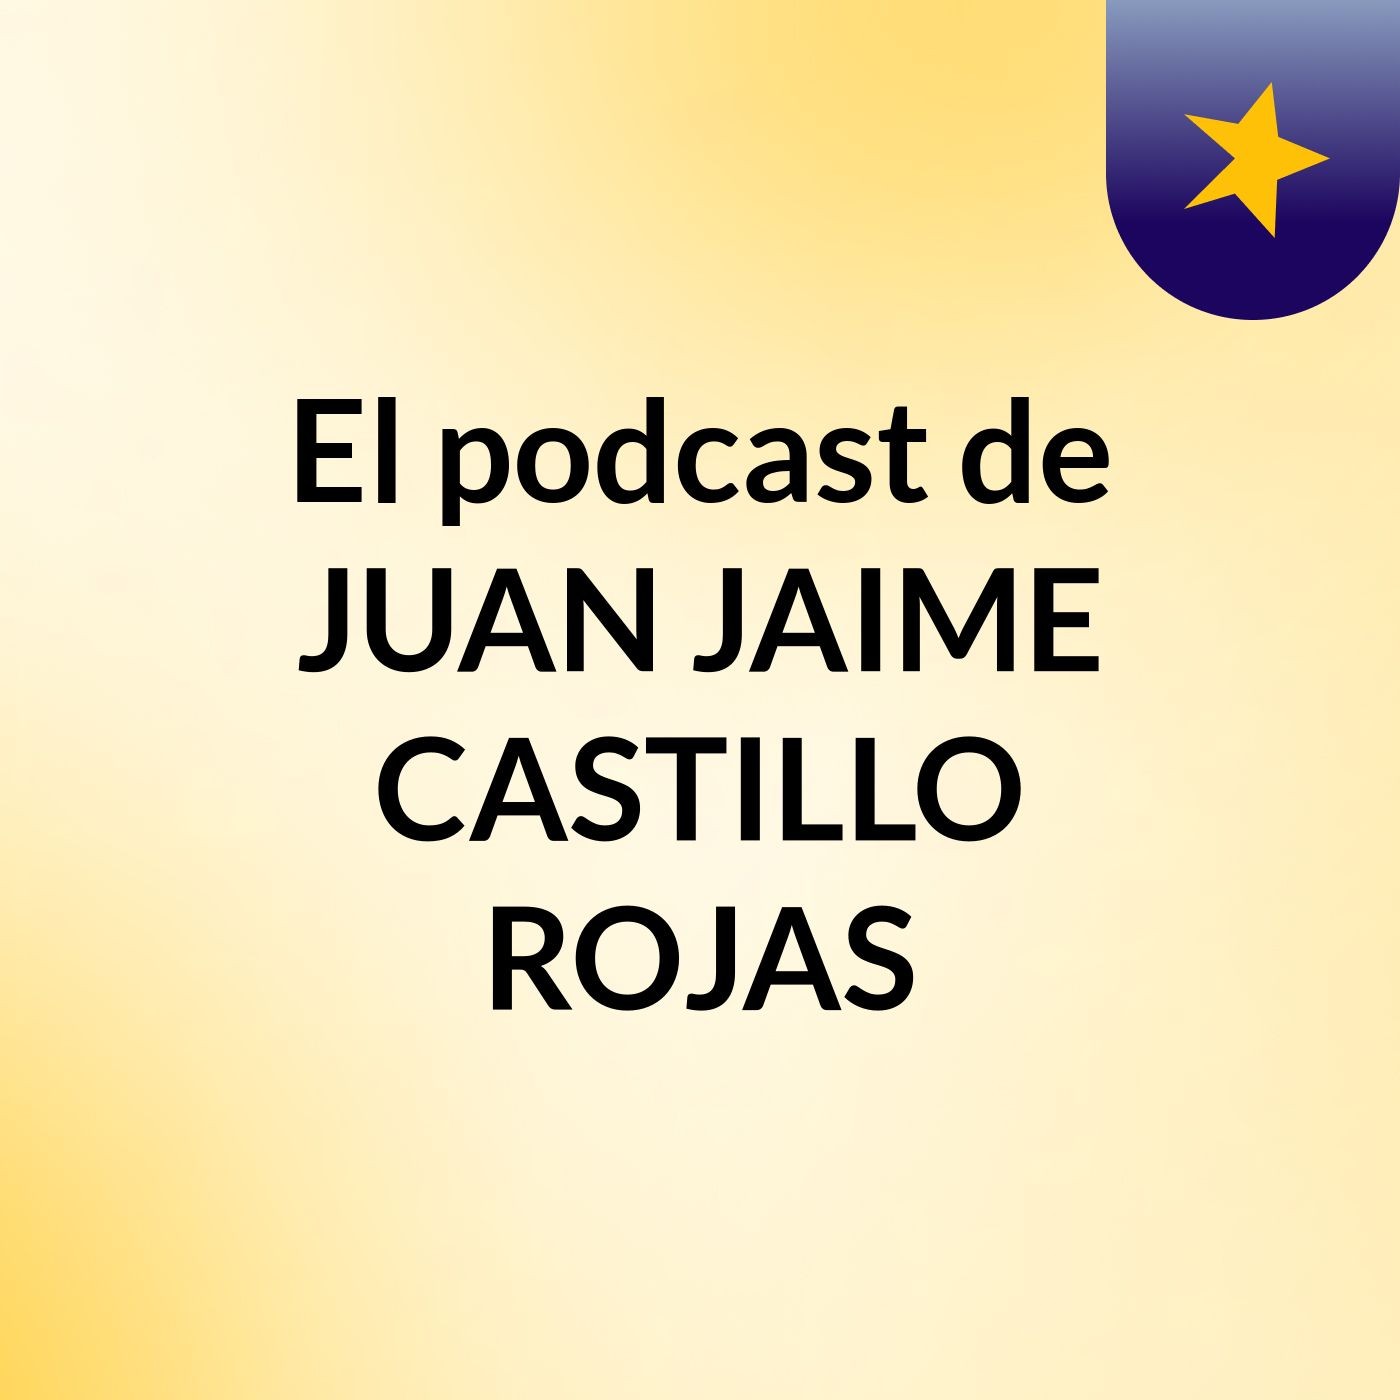 El podcast de JUAN JAIME CASTILLO ROJAS